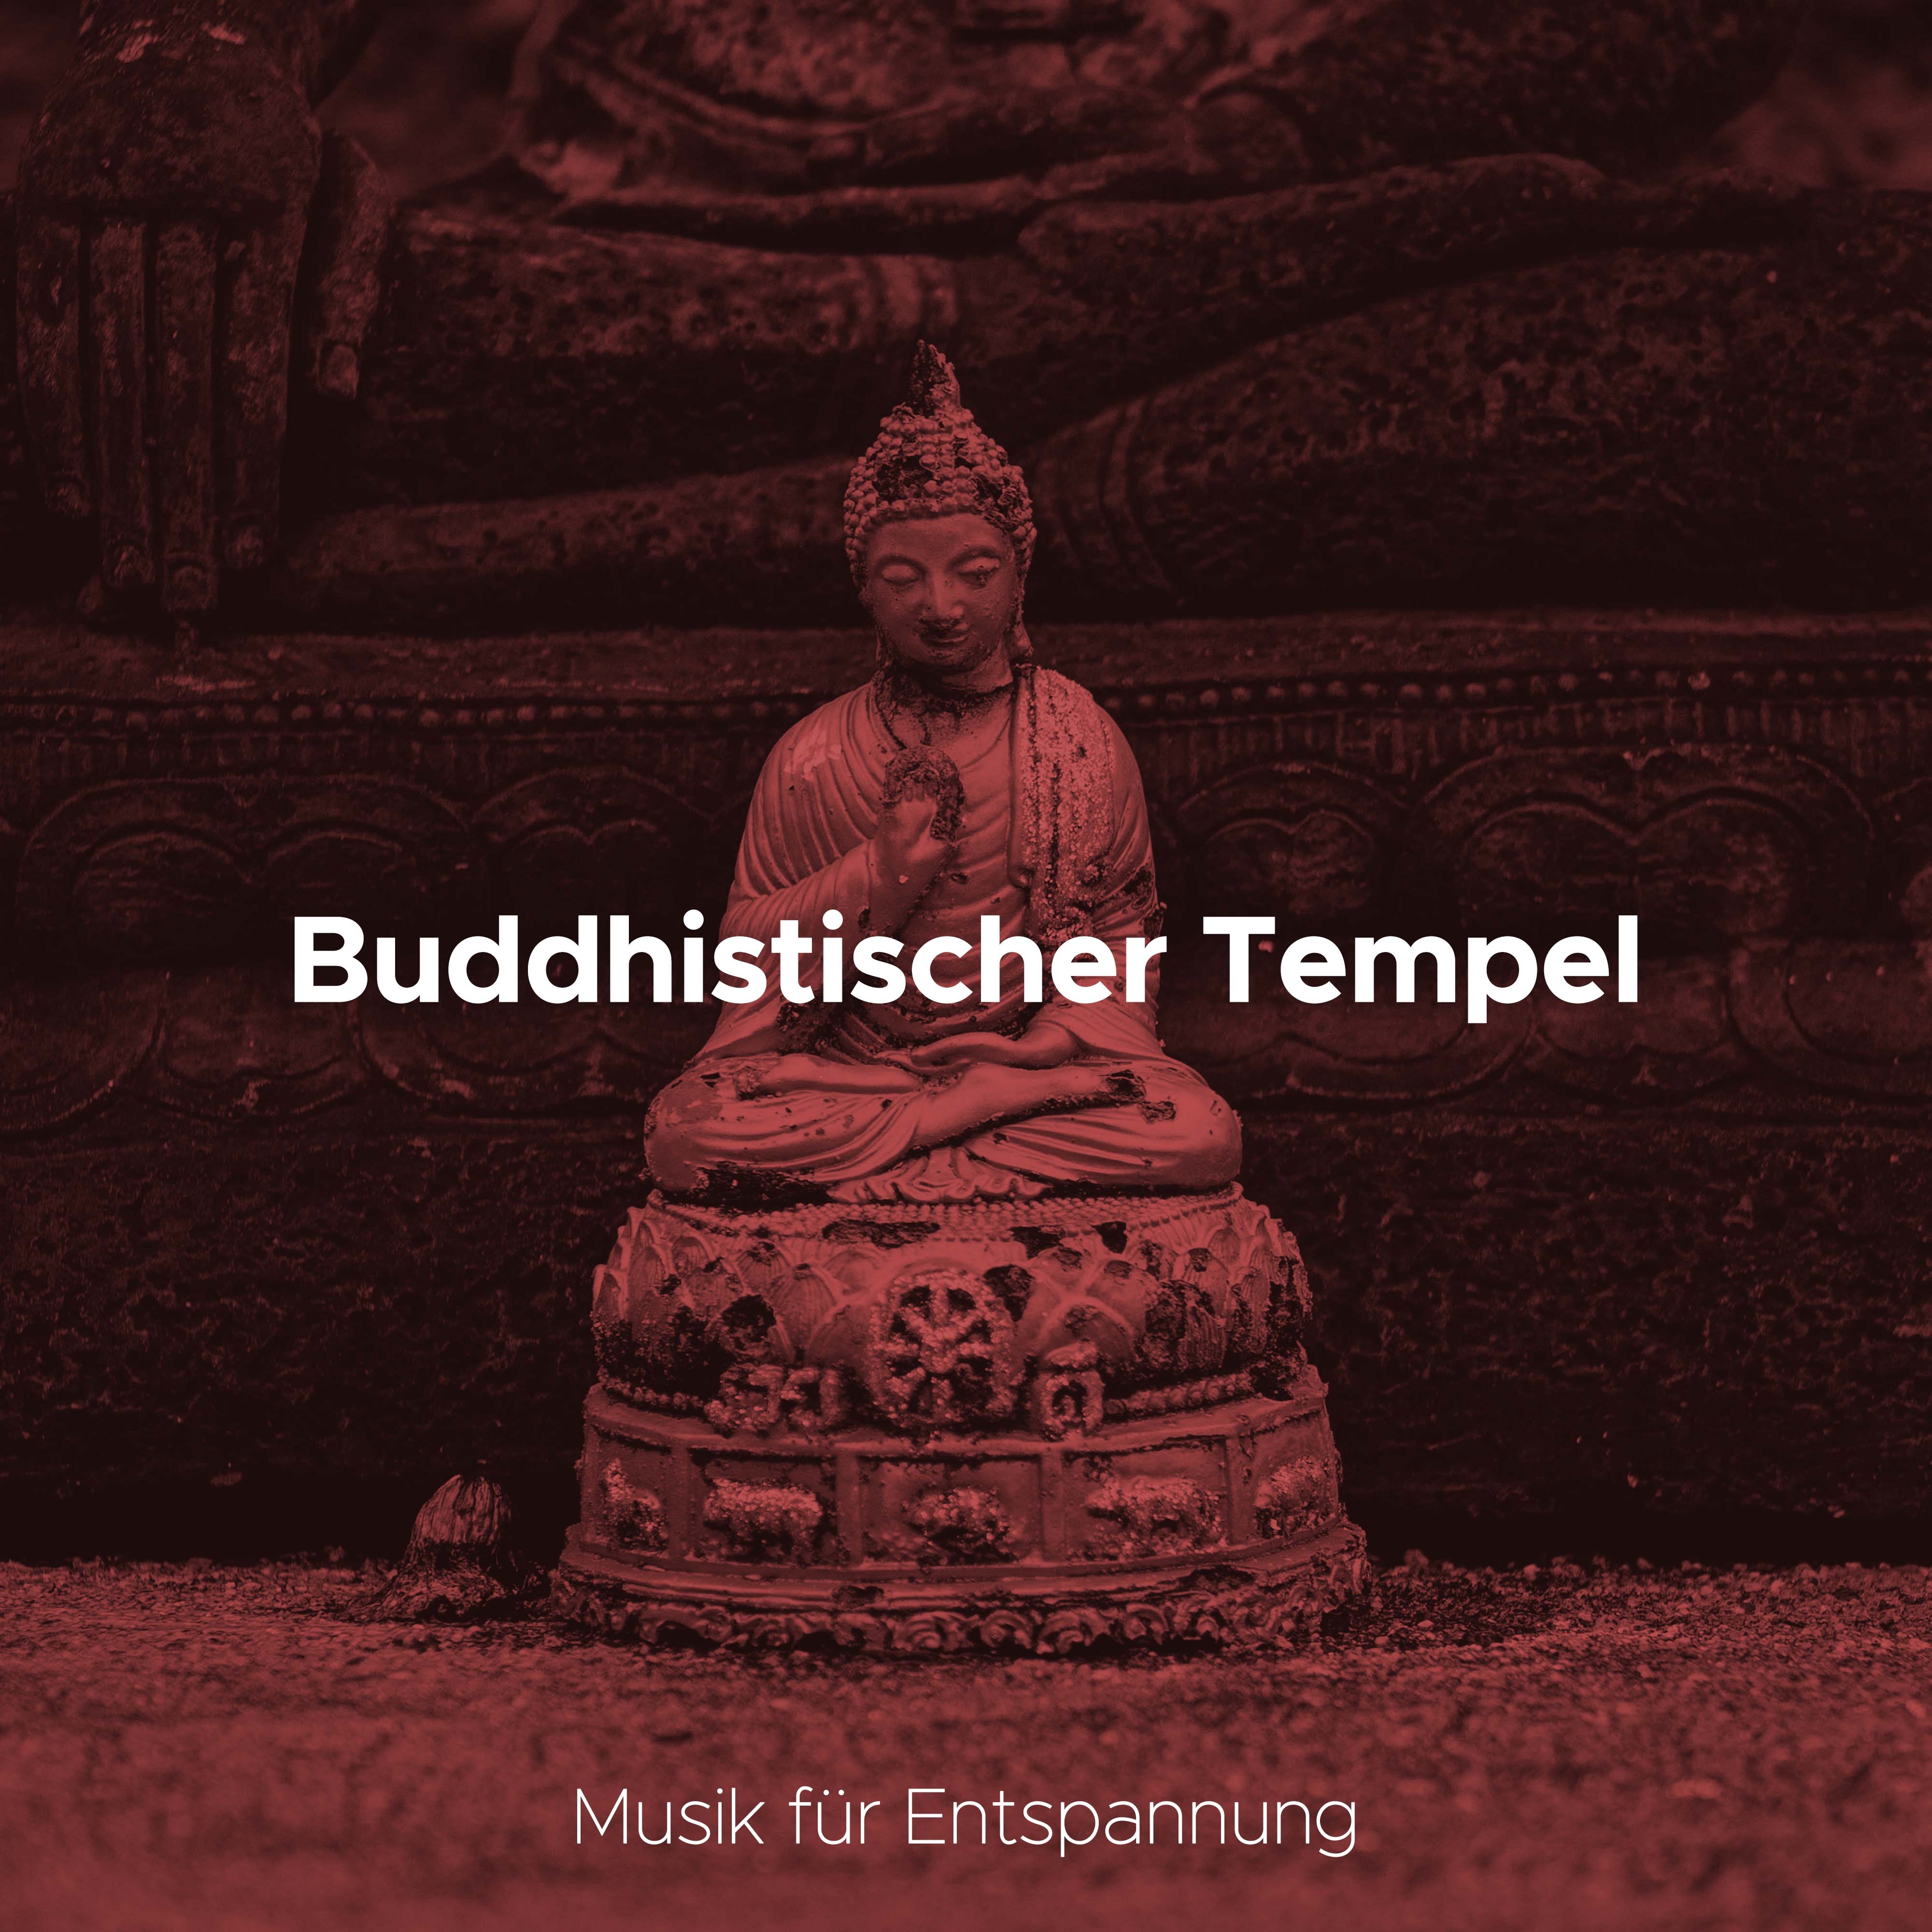 Buddhistischer Tempel: Musik für Entspannung und Buddhismus